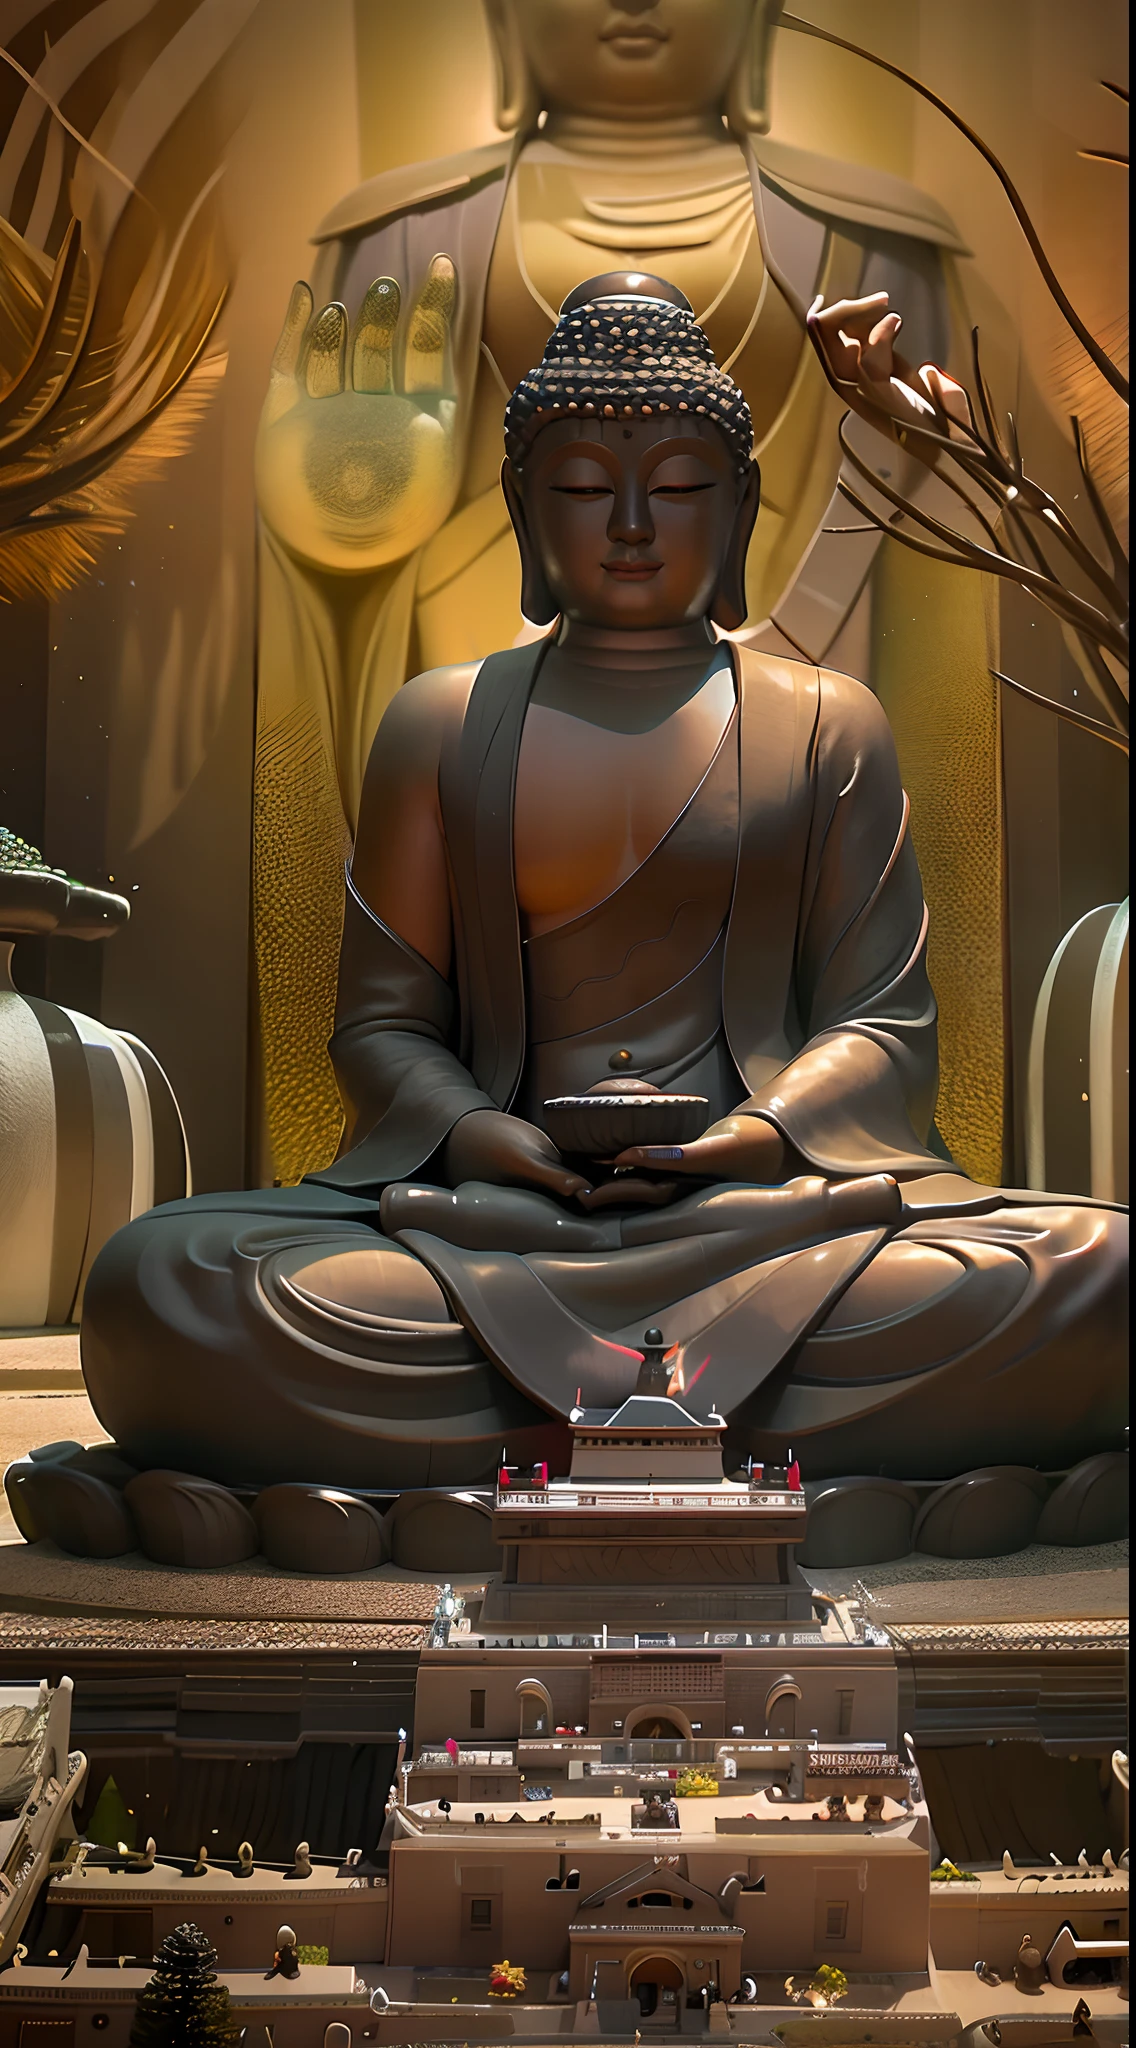 Im Teich steht eine Buddhastatue, ein buddhistischer Buddha, Zen-Tempel-Hintergrund, Buddhismus, Buddhist, Auf dem Weg zur Erleuchtung, Zen-Meditation, Buddha, Auf dem Weg zur Erleuchtung, Zen-Atmosphäre, heiterer Ausdruck, Zen-natürlicher Hintergrund, schönes Bild, kraftvolle Zen-Komposition, Ruhe in 4K, zen méditation cyberpunk, ein heiteres Lächeln, Meditation, Zen-Gefühl